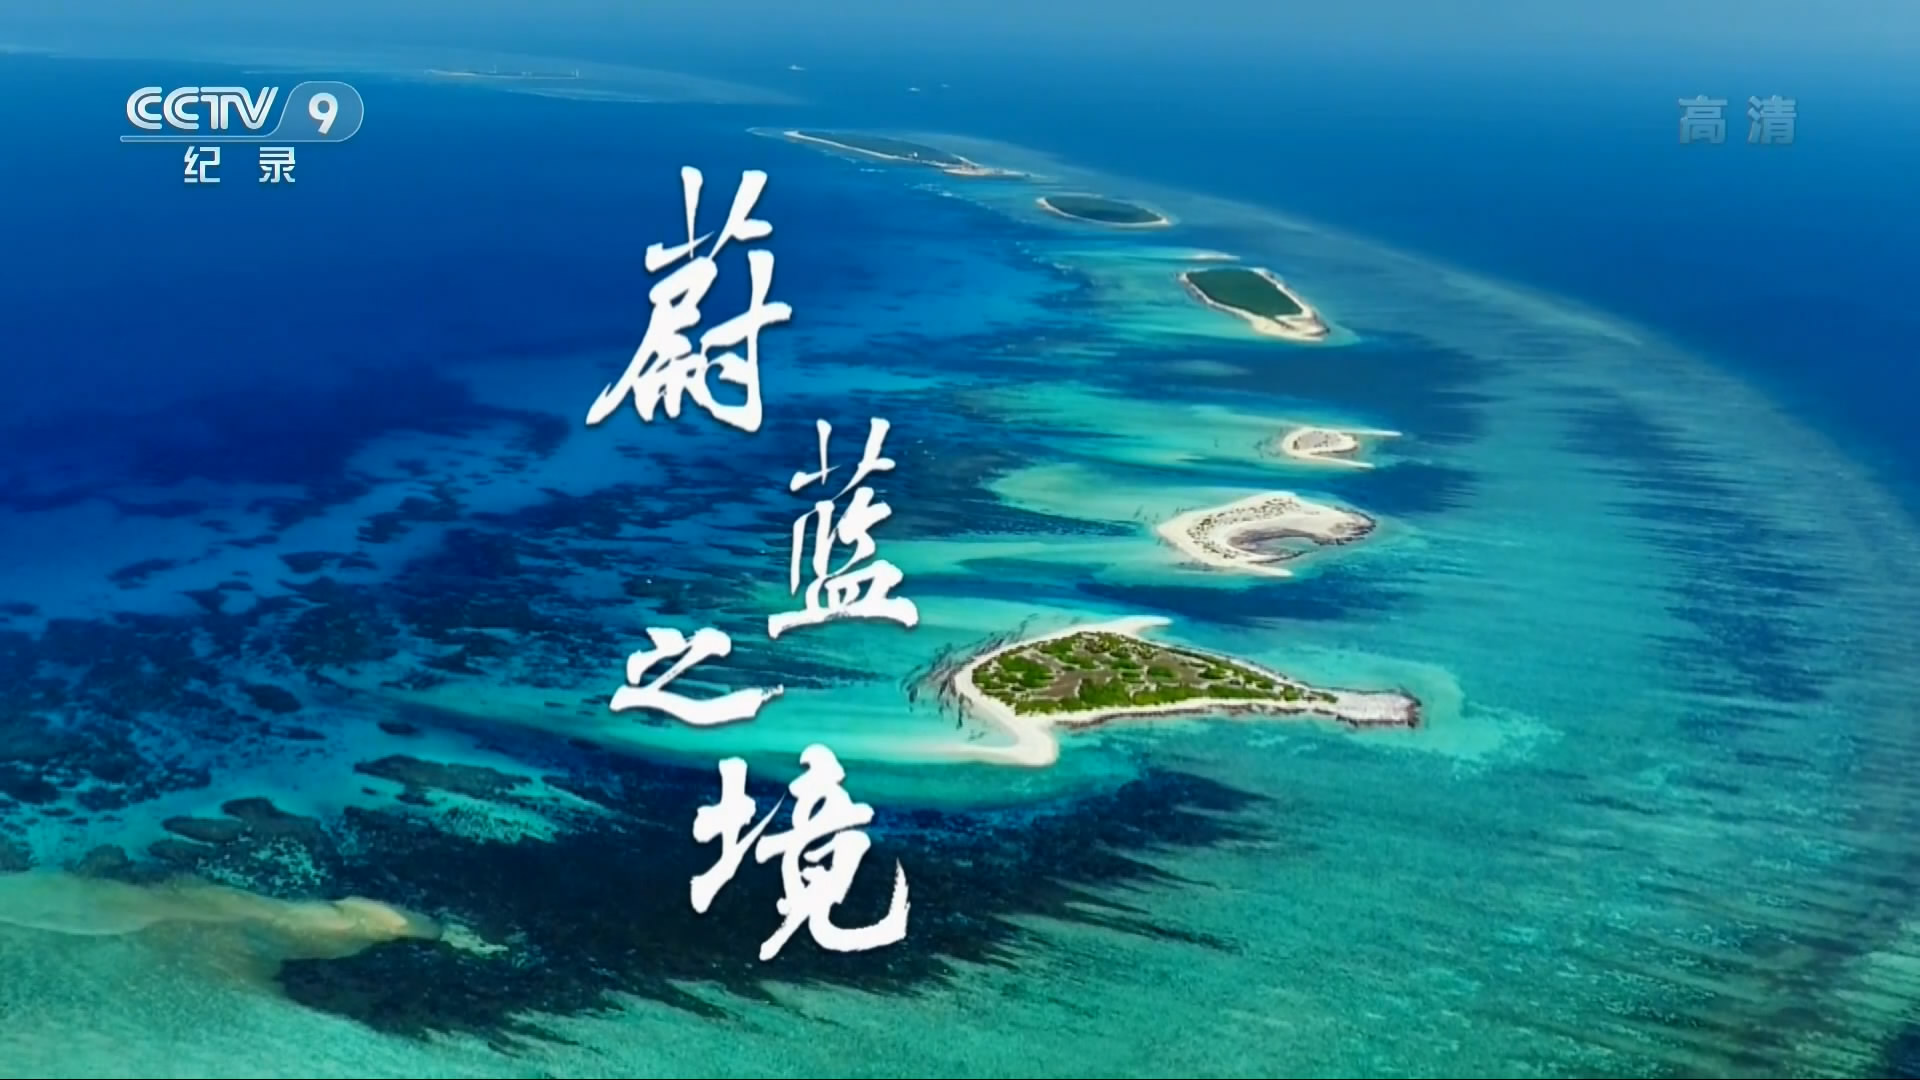 《蔚蓝之境》6集全中国海洋自己的第一部自然类纪录片1080P